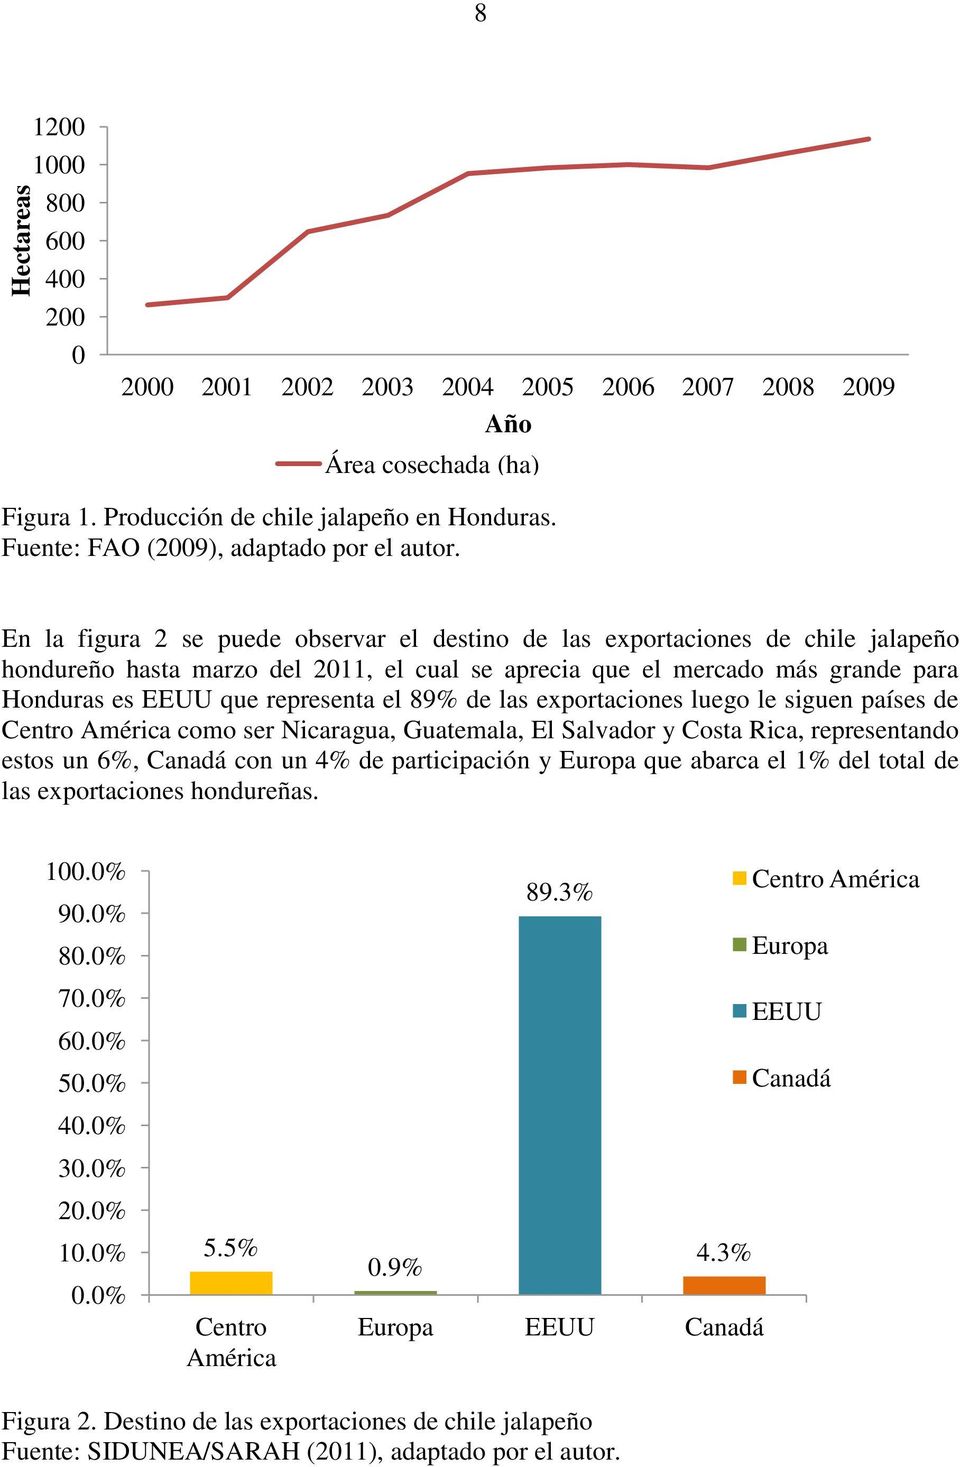 En la figura 2 se puede observar el destino de las exportaciones de chile jalapeño hondureño hasta marzo del 2011, el cual se aprecia que el mercado más grande para Honduras es EEUU que representa el